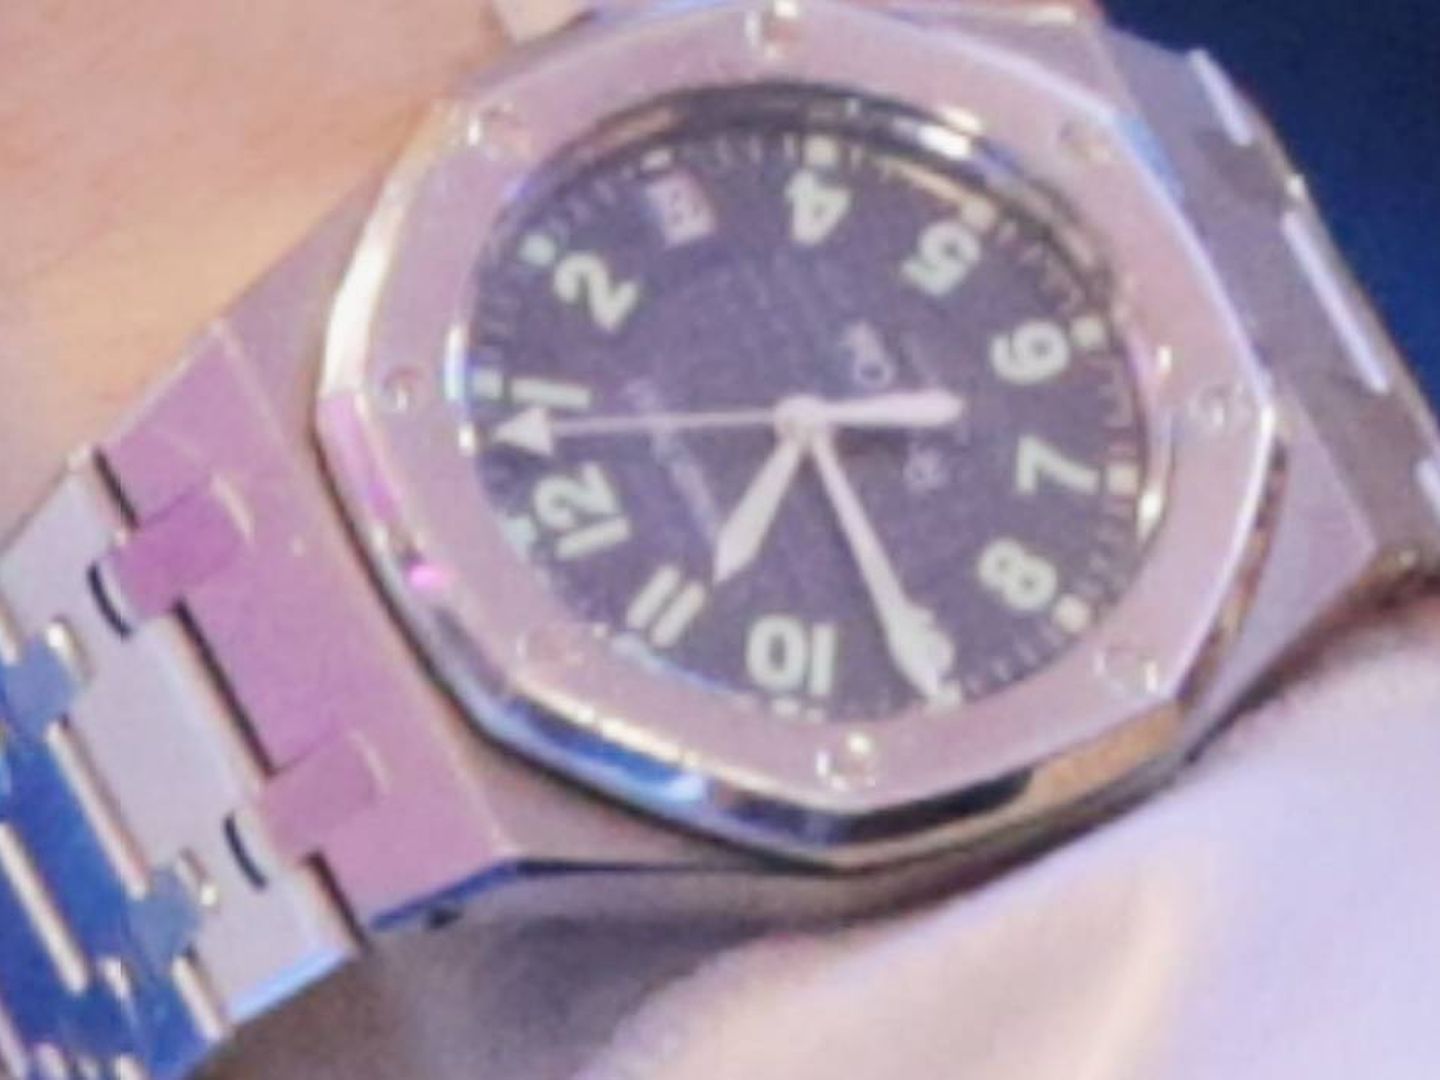 El reloj de Corinna de Audemars Piguet. (Getty)